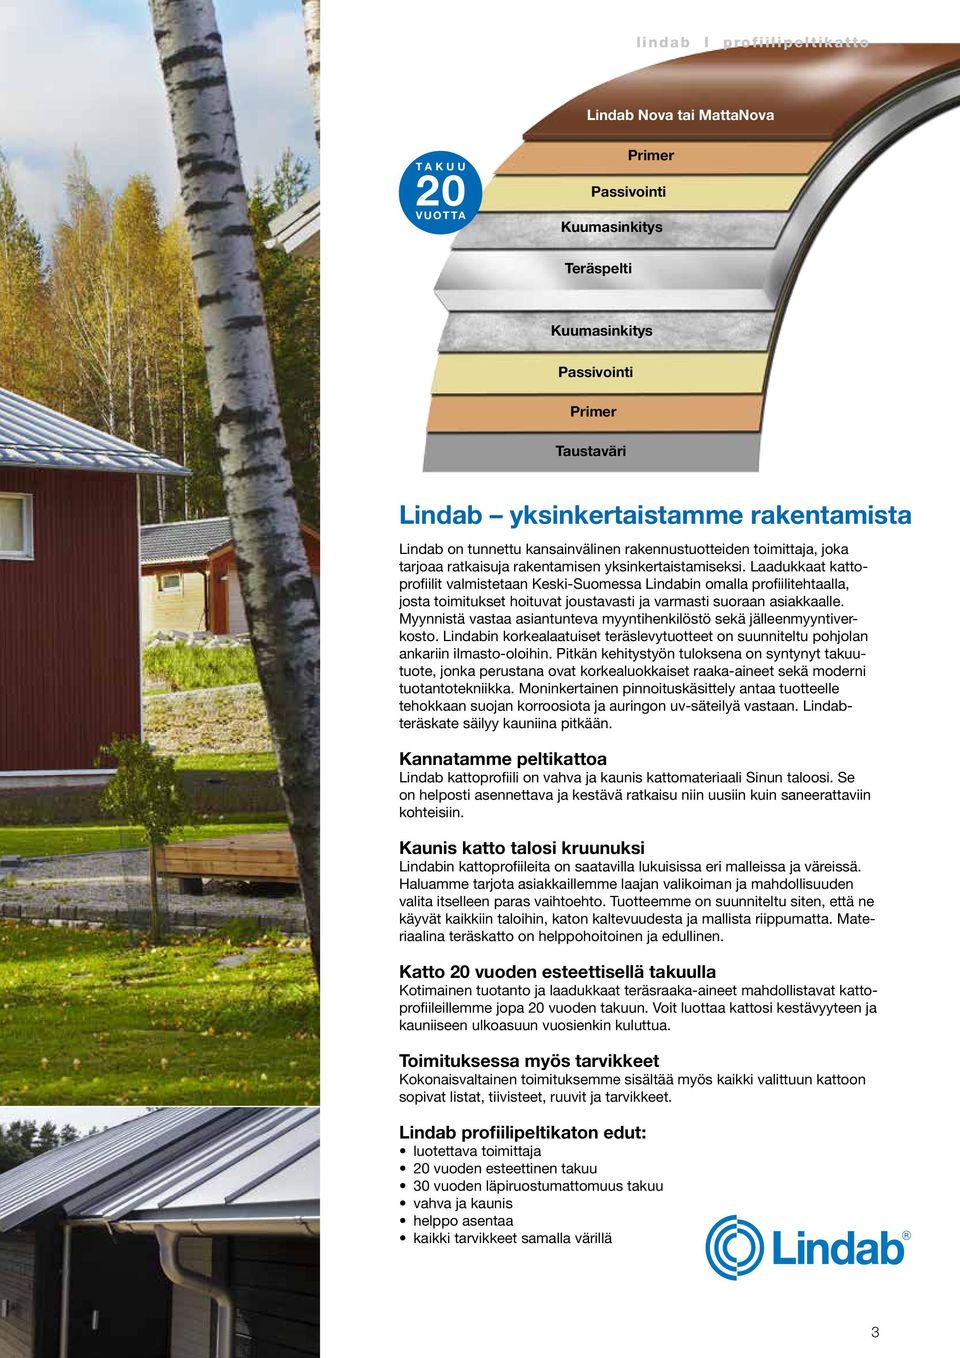 Laadukkaat kattoprofiilit valmistetaan Keski-Suomessa Lindabin omalla profiilitehtaalla, josta toimitukset hoituvat joustavasti ja varmasti suoraan asiakkaalle.